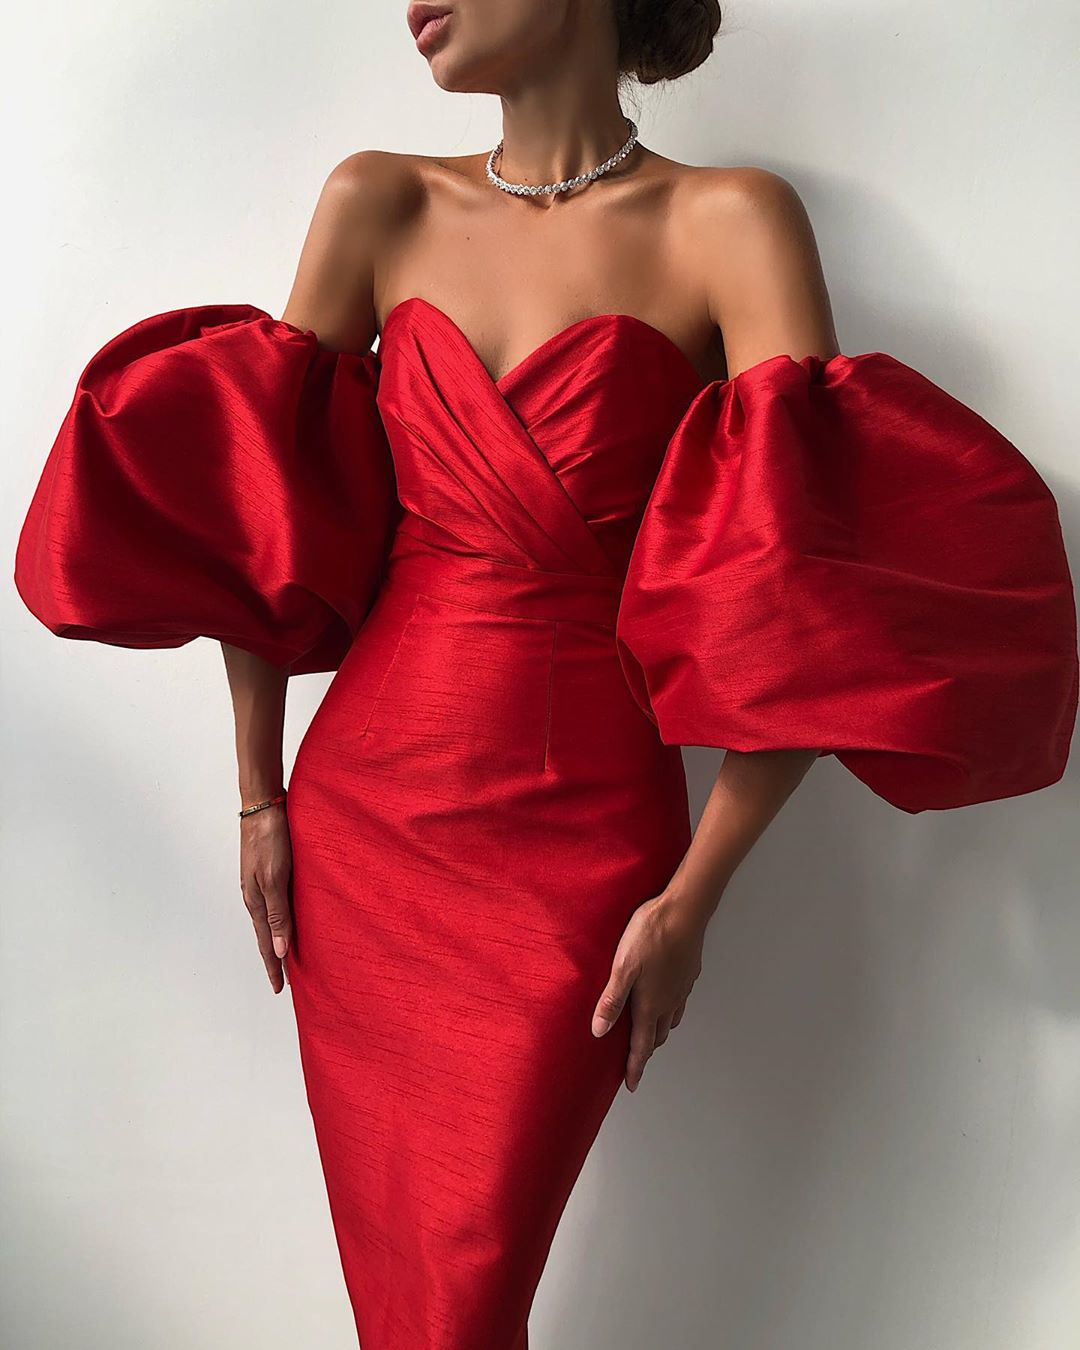 LN-family.com - New
Платье длины миди с объёмными рукавами доступно в новом красном цвете.
Все наши платья с объёмными рукавами прекрасно сочетаются с верхней одеждой. При снятии рукава легко принимаю...